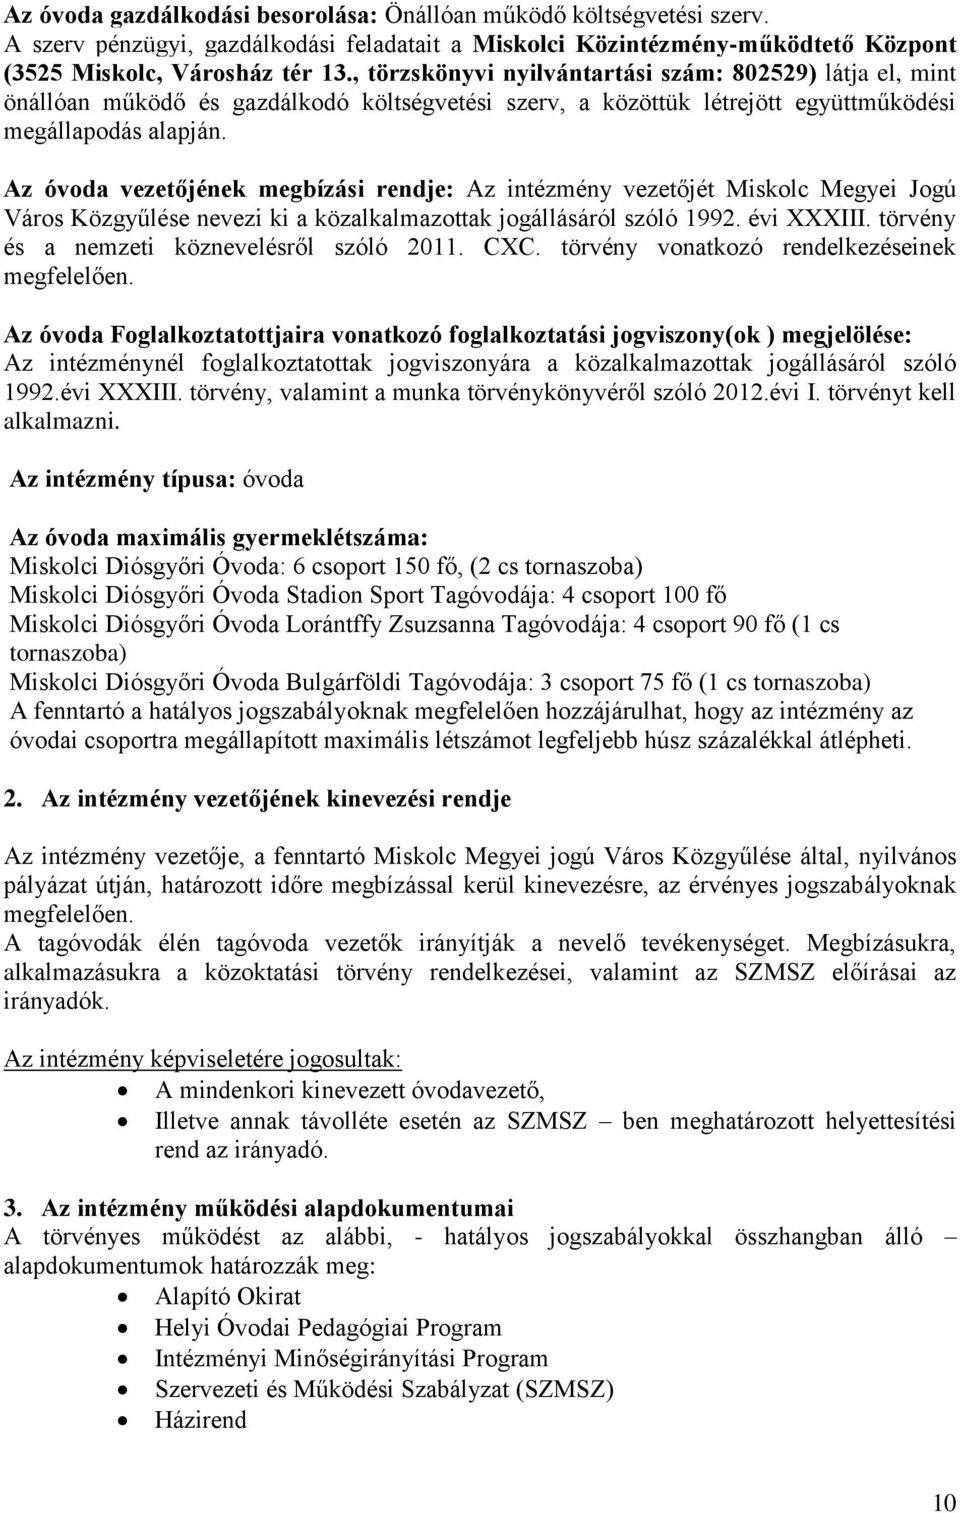 Az óvoda vezetőjének megbízási rendje: Az intézmény vezetőjét Miskolc Megyei Jogú Város Közgyűlése nevezi ki a közalkalmazottak jogállásáról szóló 1992. évi XXXIII.